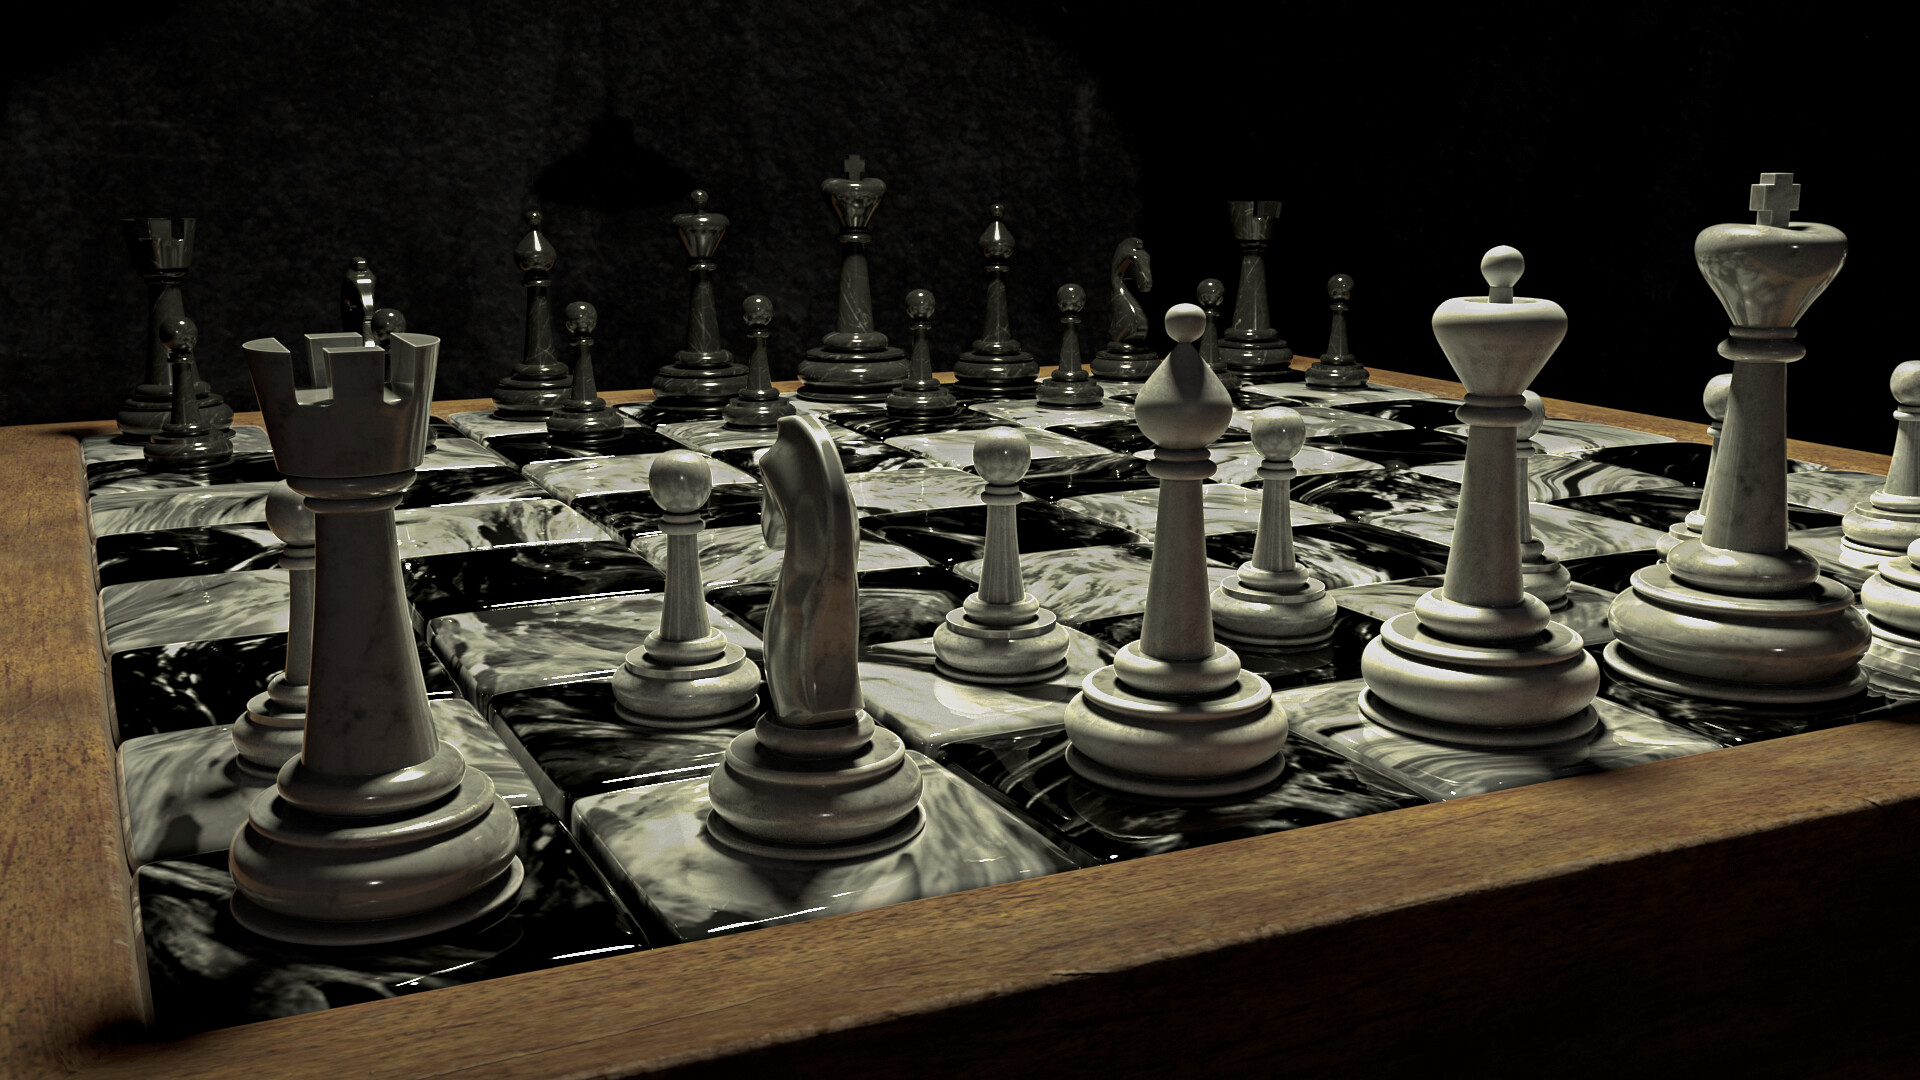 ArtStation - Chess Wallpaper